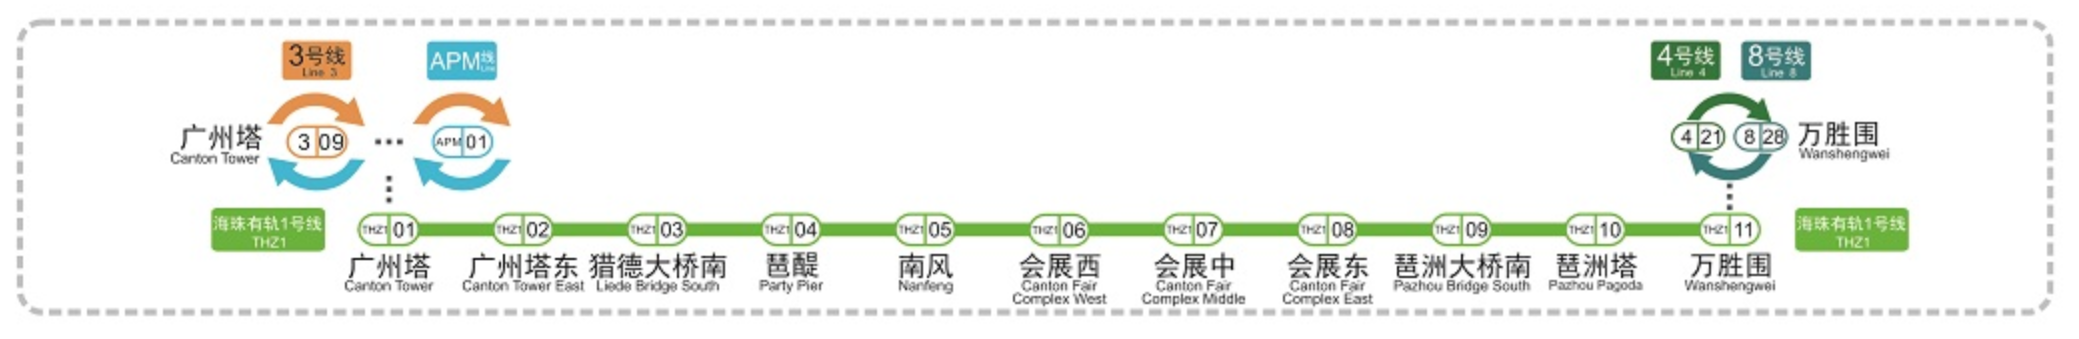 广州有轨电车线网图 图源：广州地铁